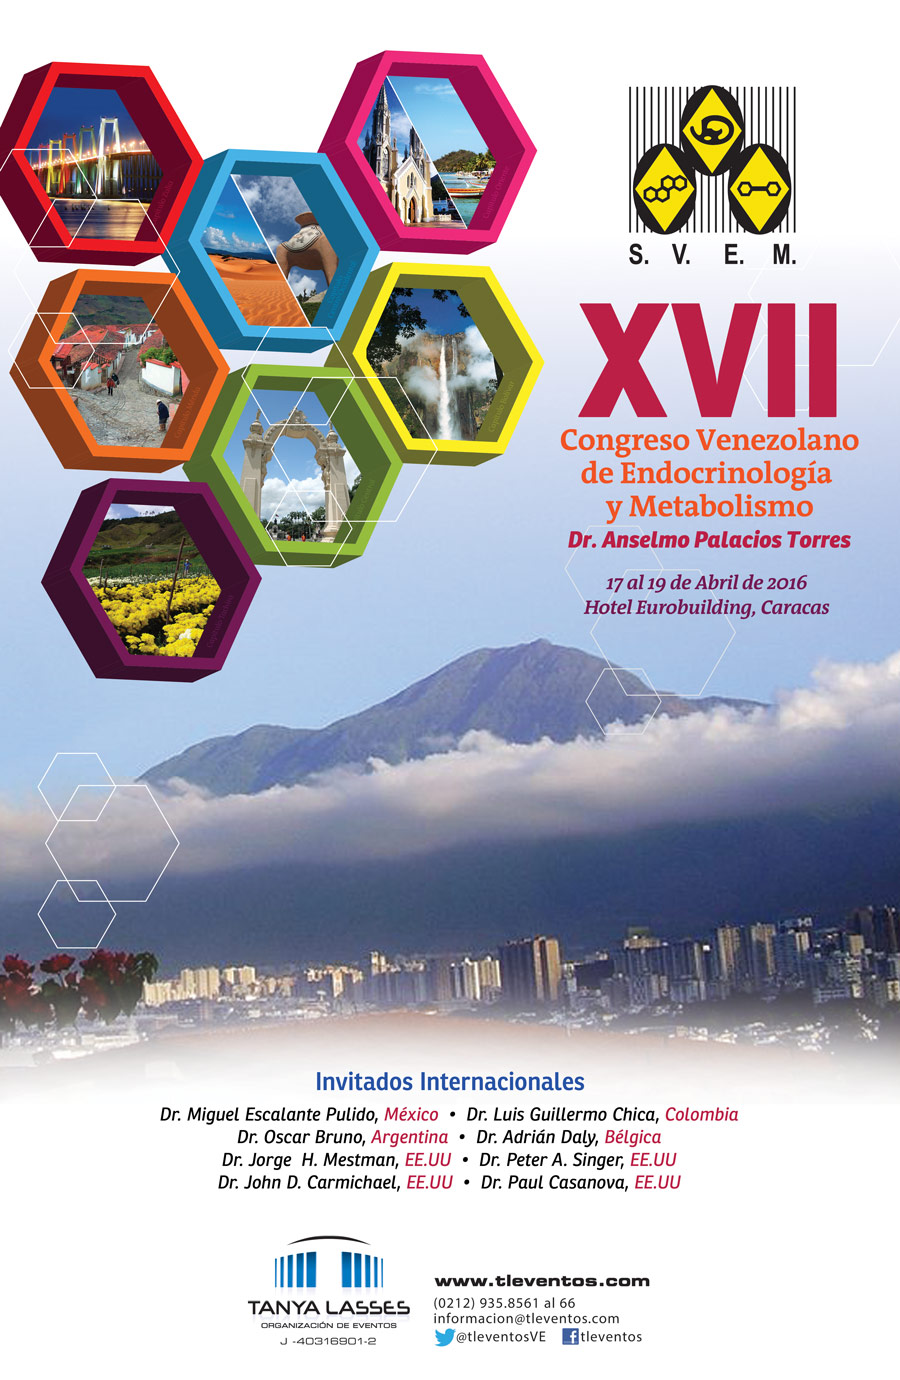 En este momento estás viendo Congreso Venezolano de Endocrinología y Metabolismo, 17 al 19 de Abril 2016 Hotel Eurobuilding Caracas.